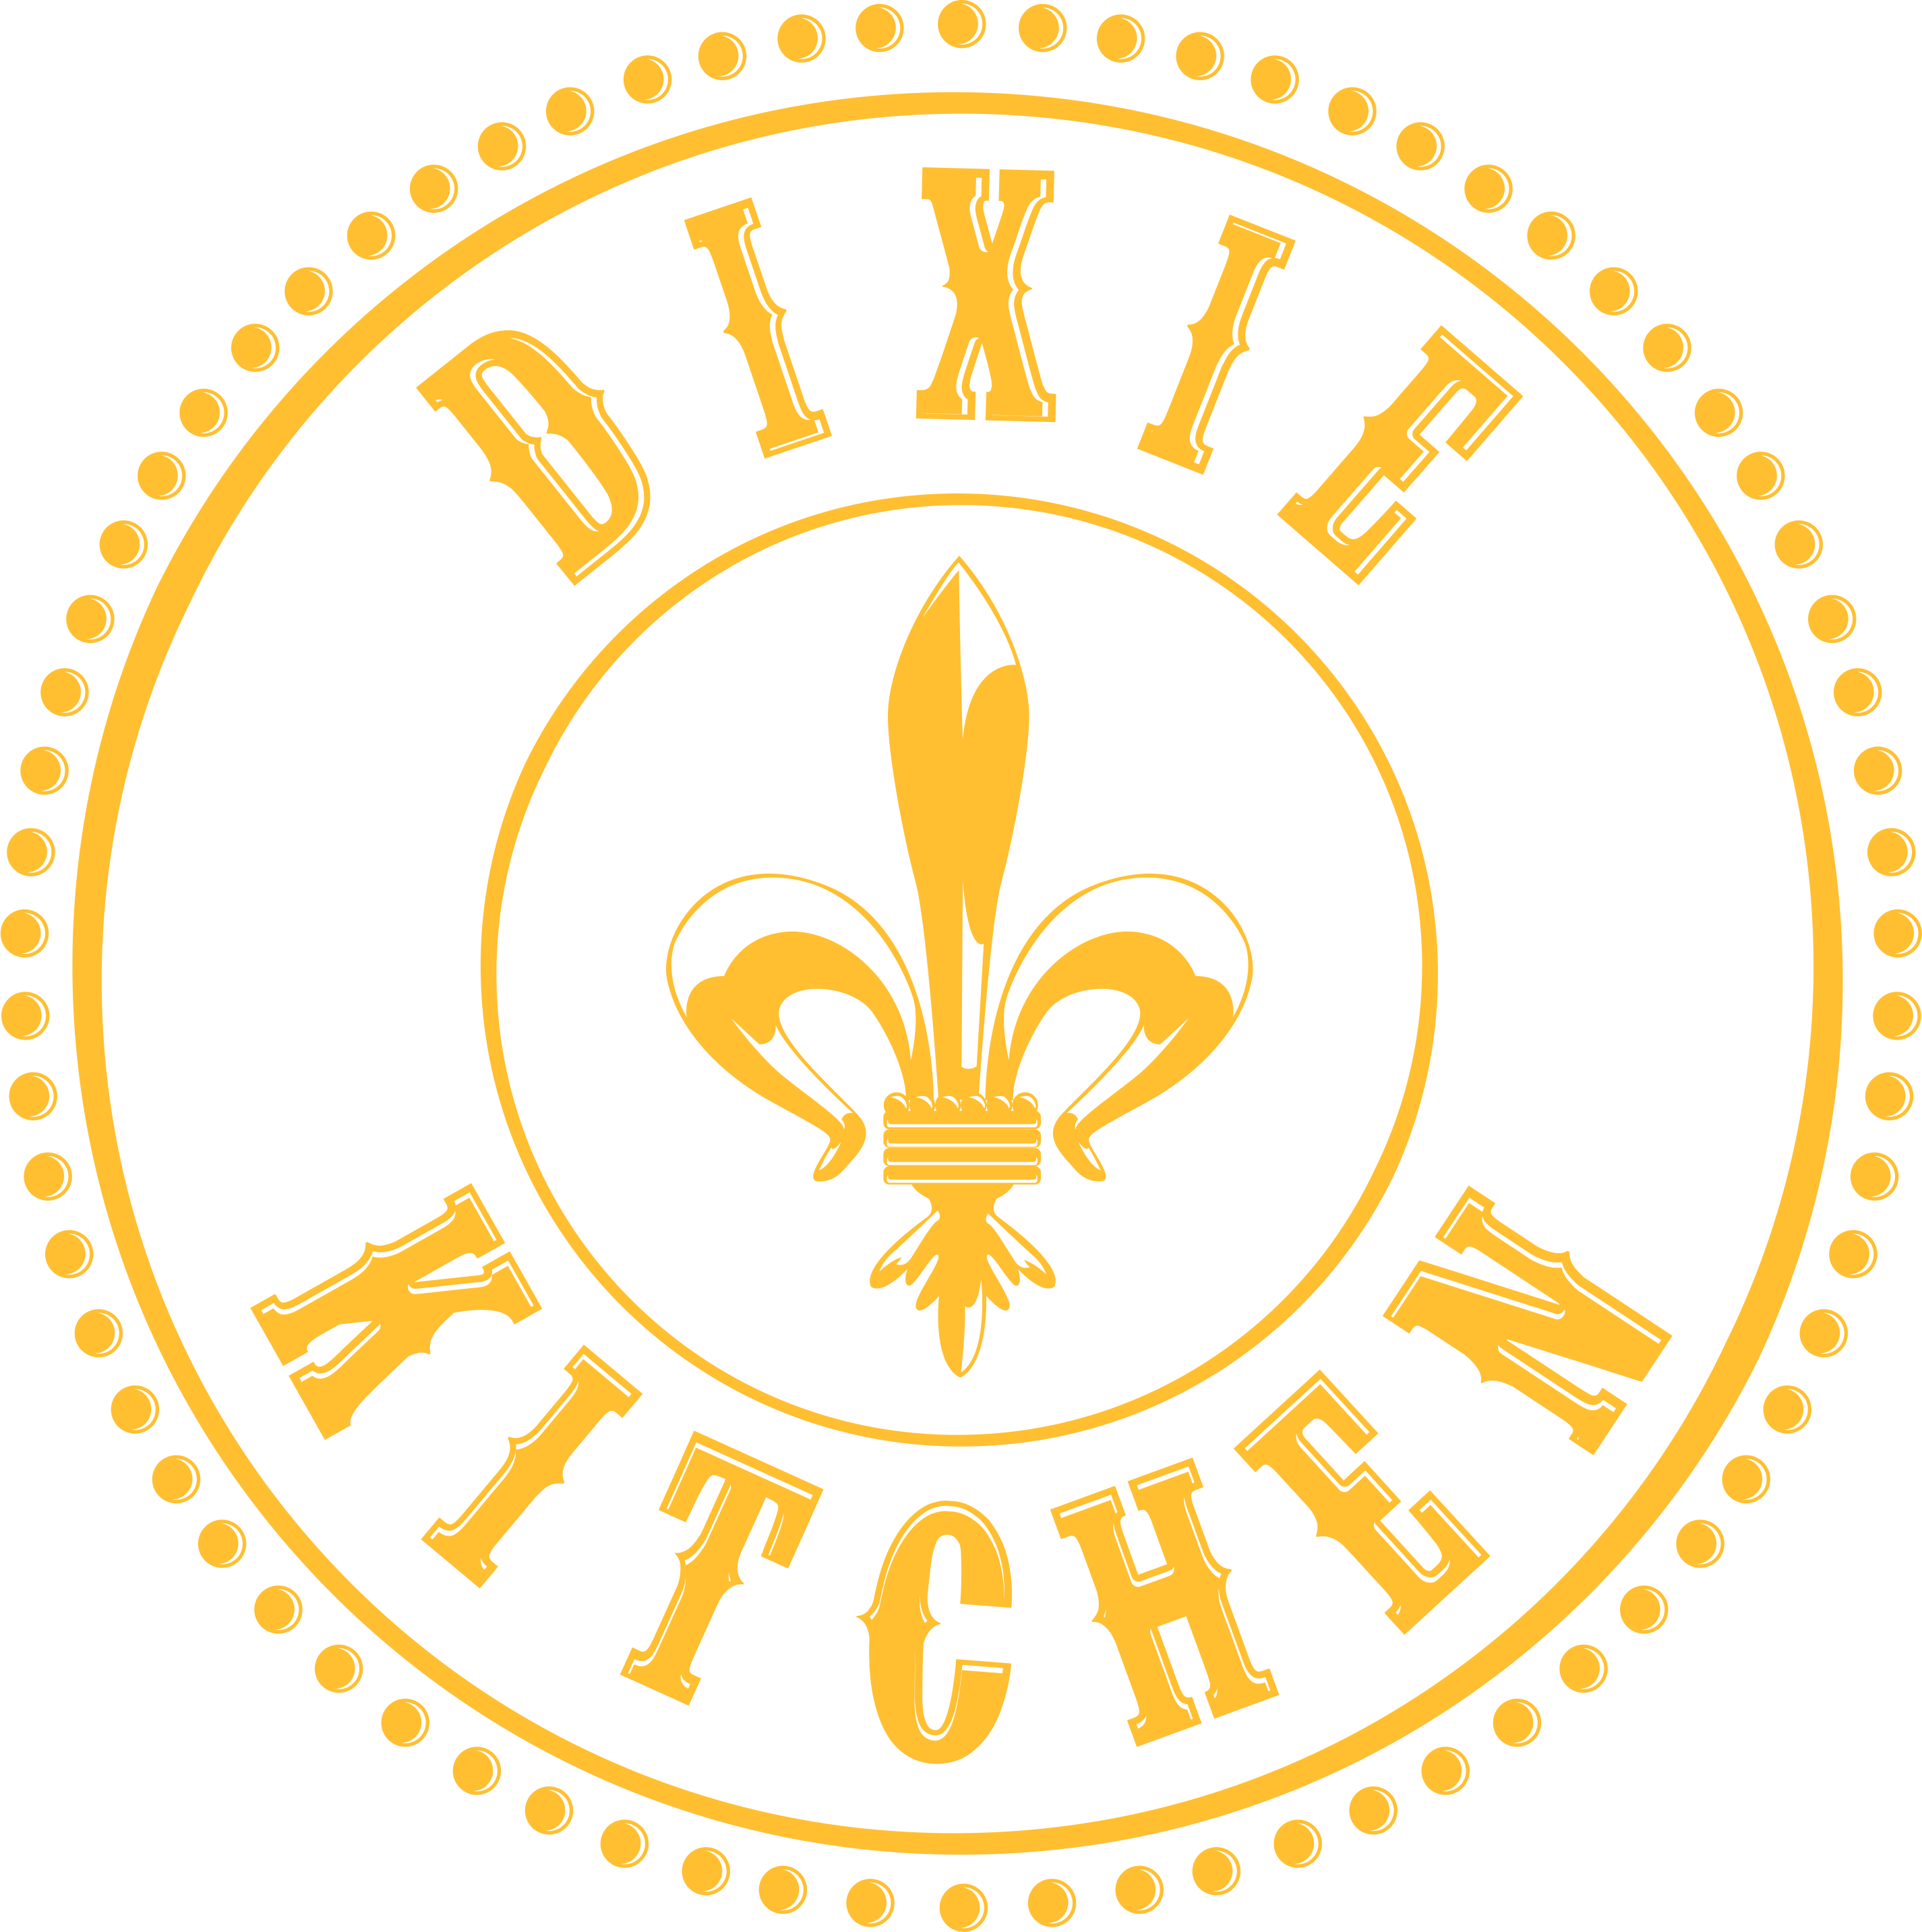 OhjMsw1YRHsmC00qAOJb Dixie Kitchen 2018 (2)logo (1) 